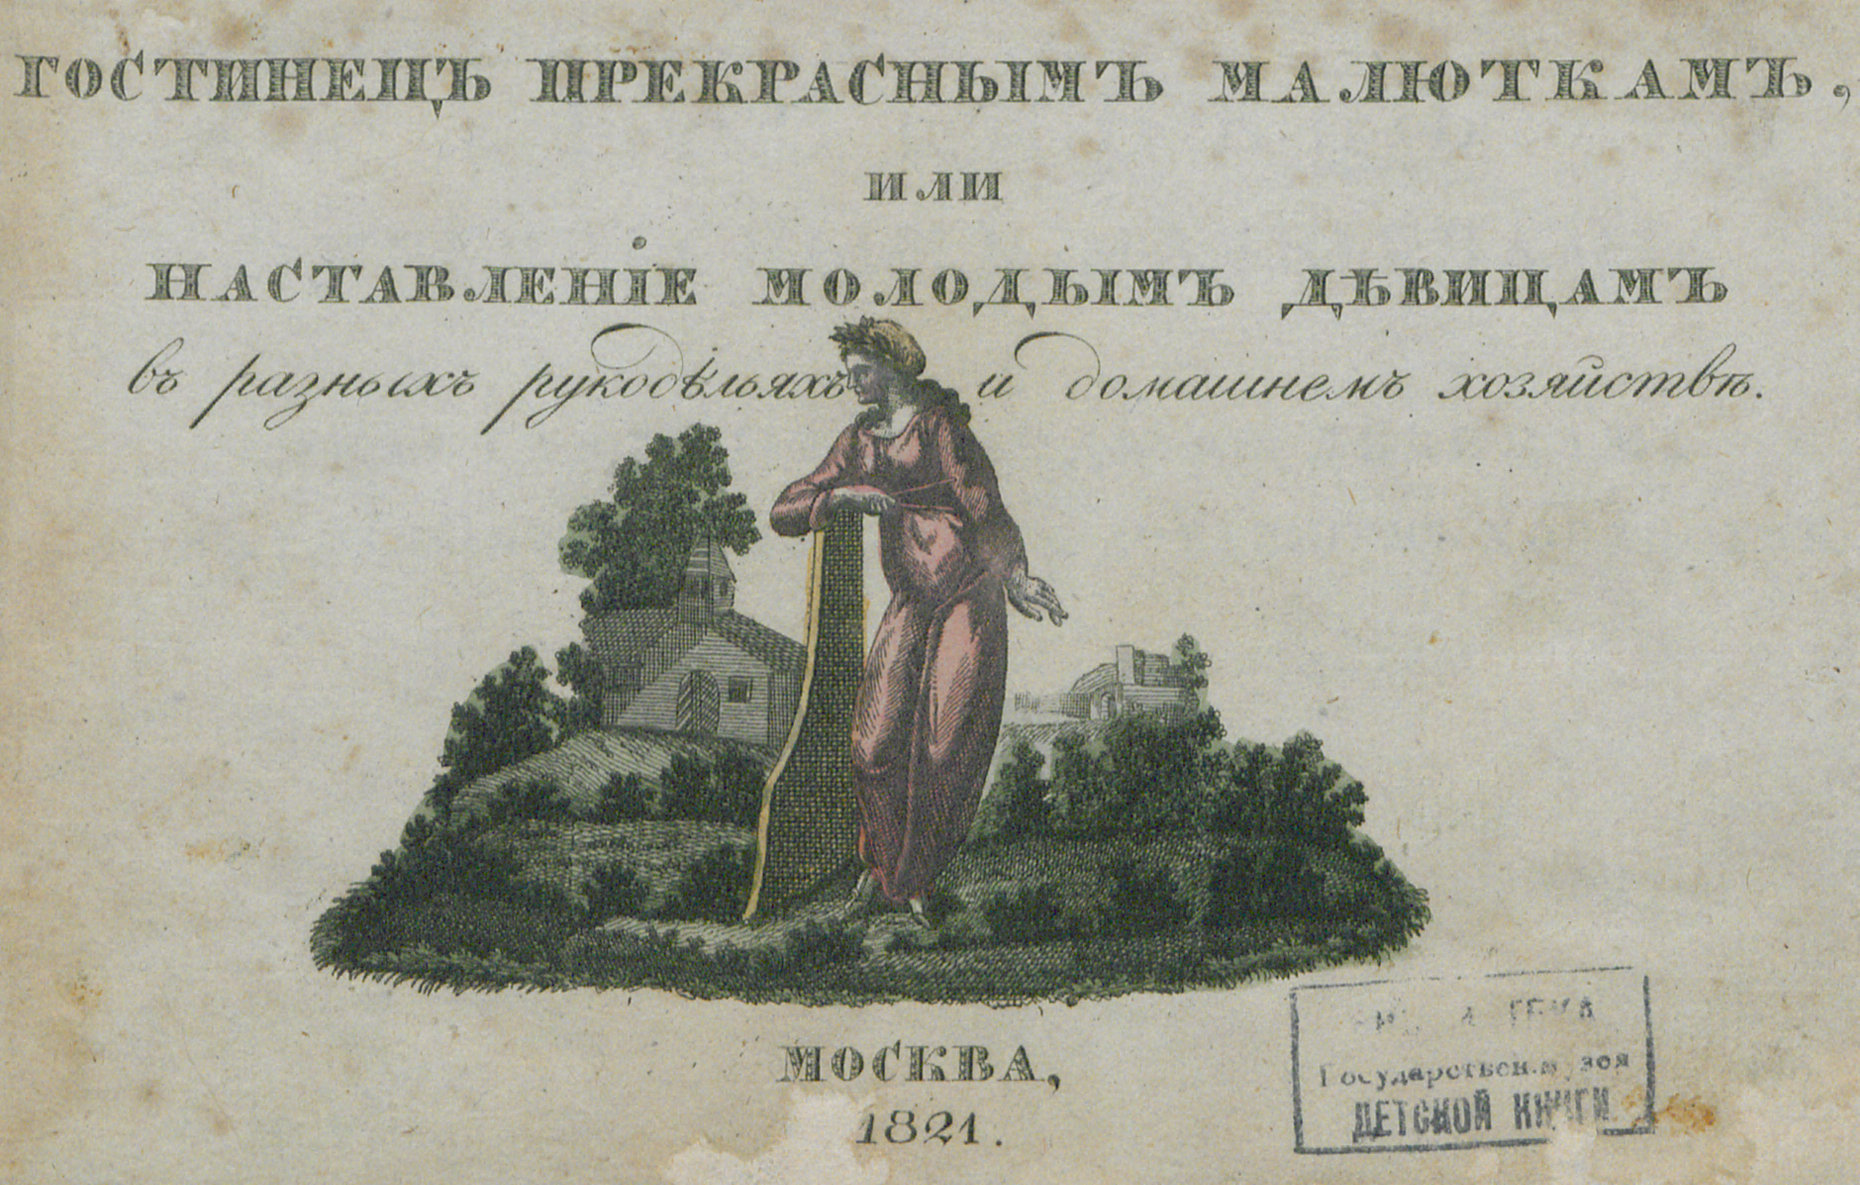 Гостинец прекрасным малюткам, или Наставление молодым девицам в разных рукоделиях и домашнем хозяйстве - 1821